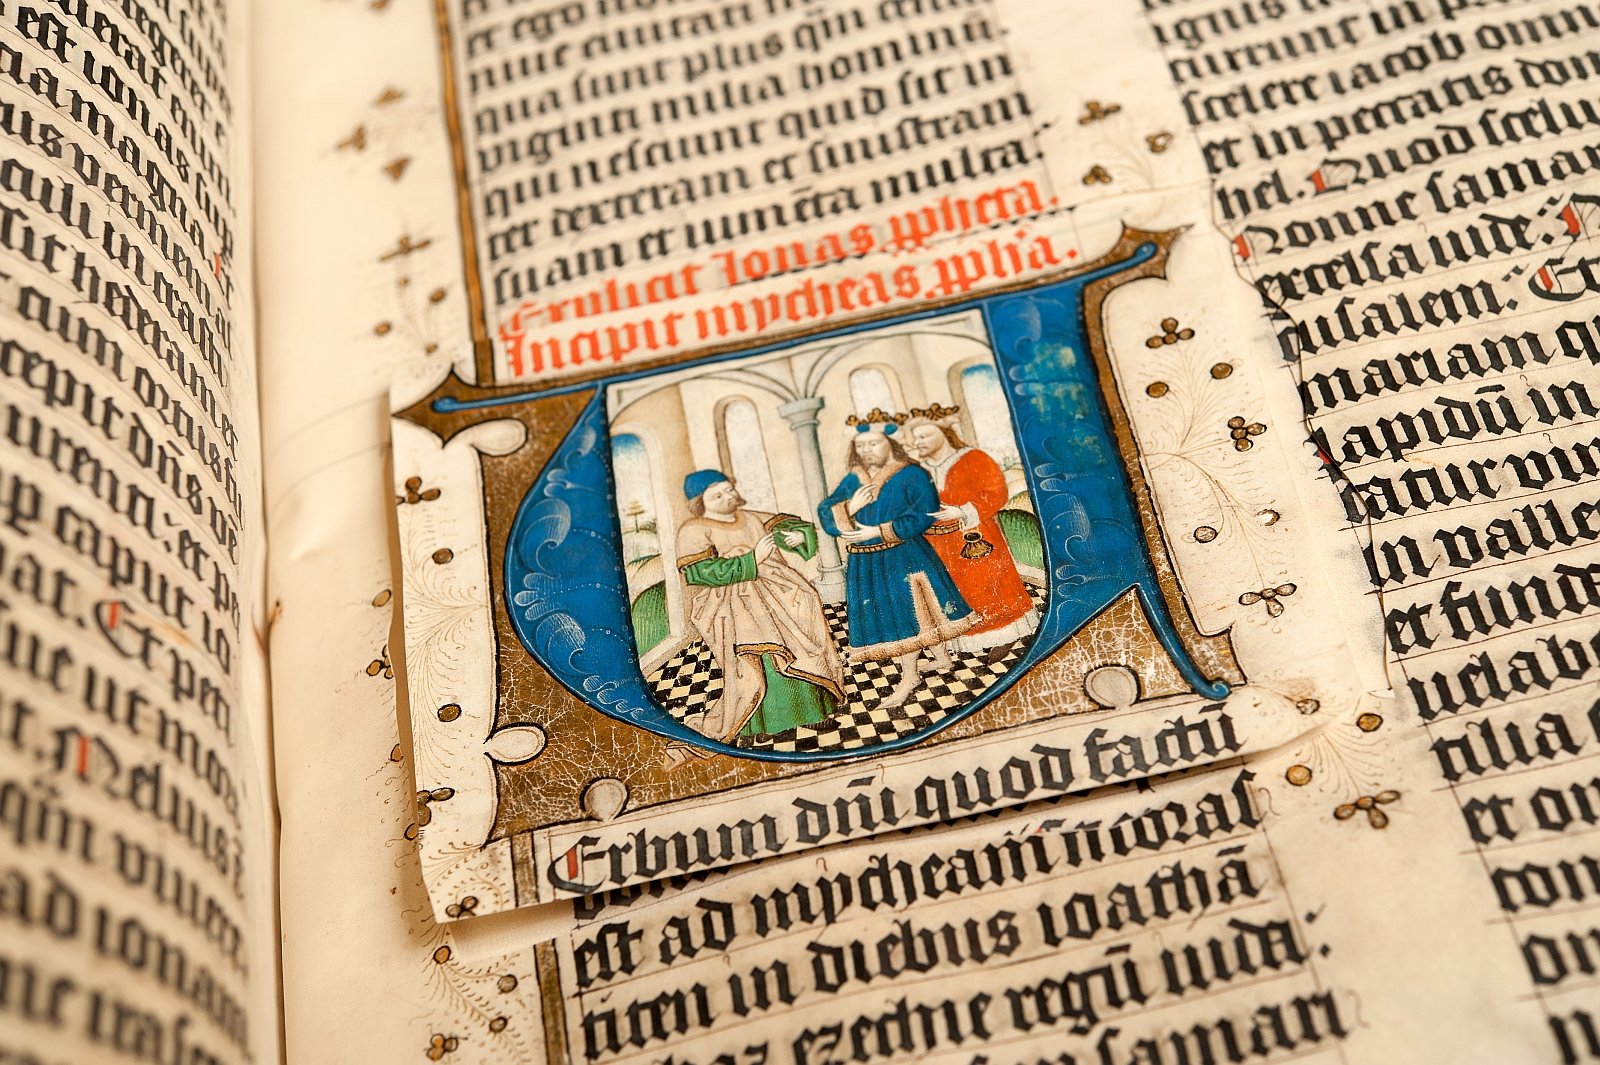 Zwolse Bijbel met uitgesneden initiaal, topstuk uit Bijzondere Collecties van de Universiteitsbibliotheek Utrecht